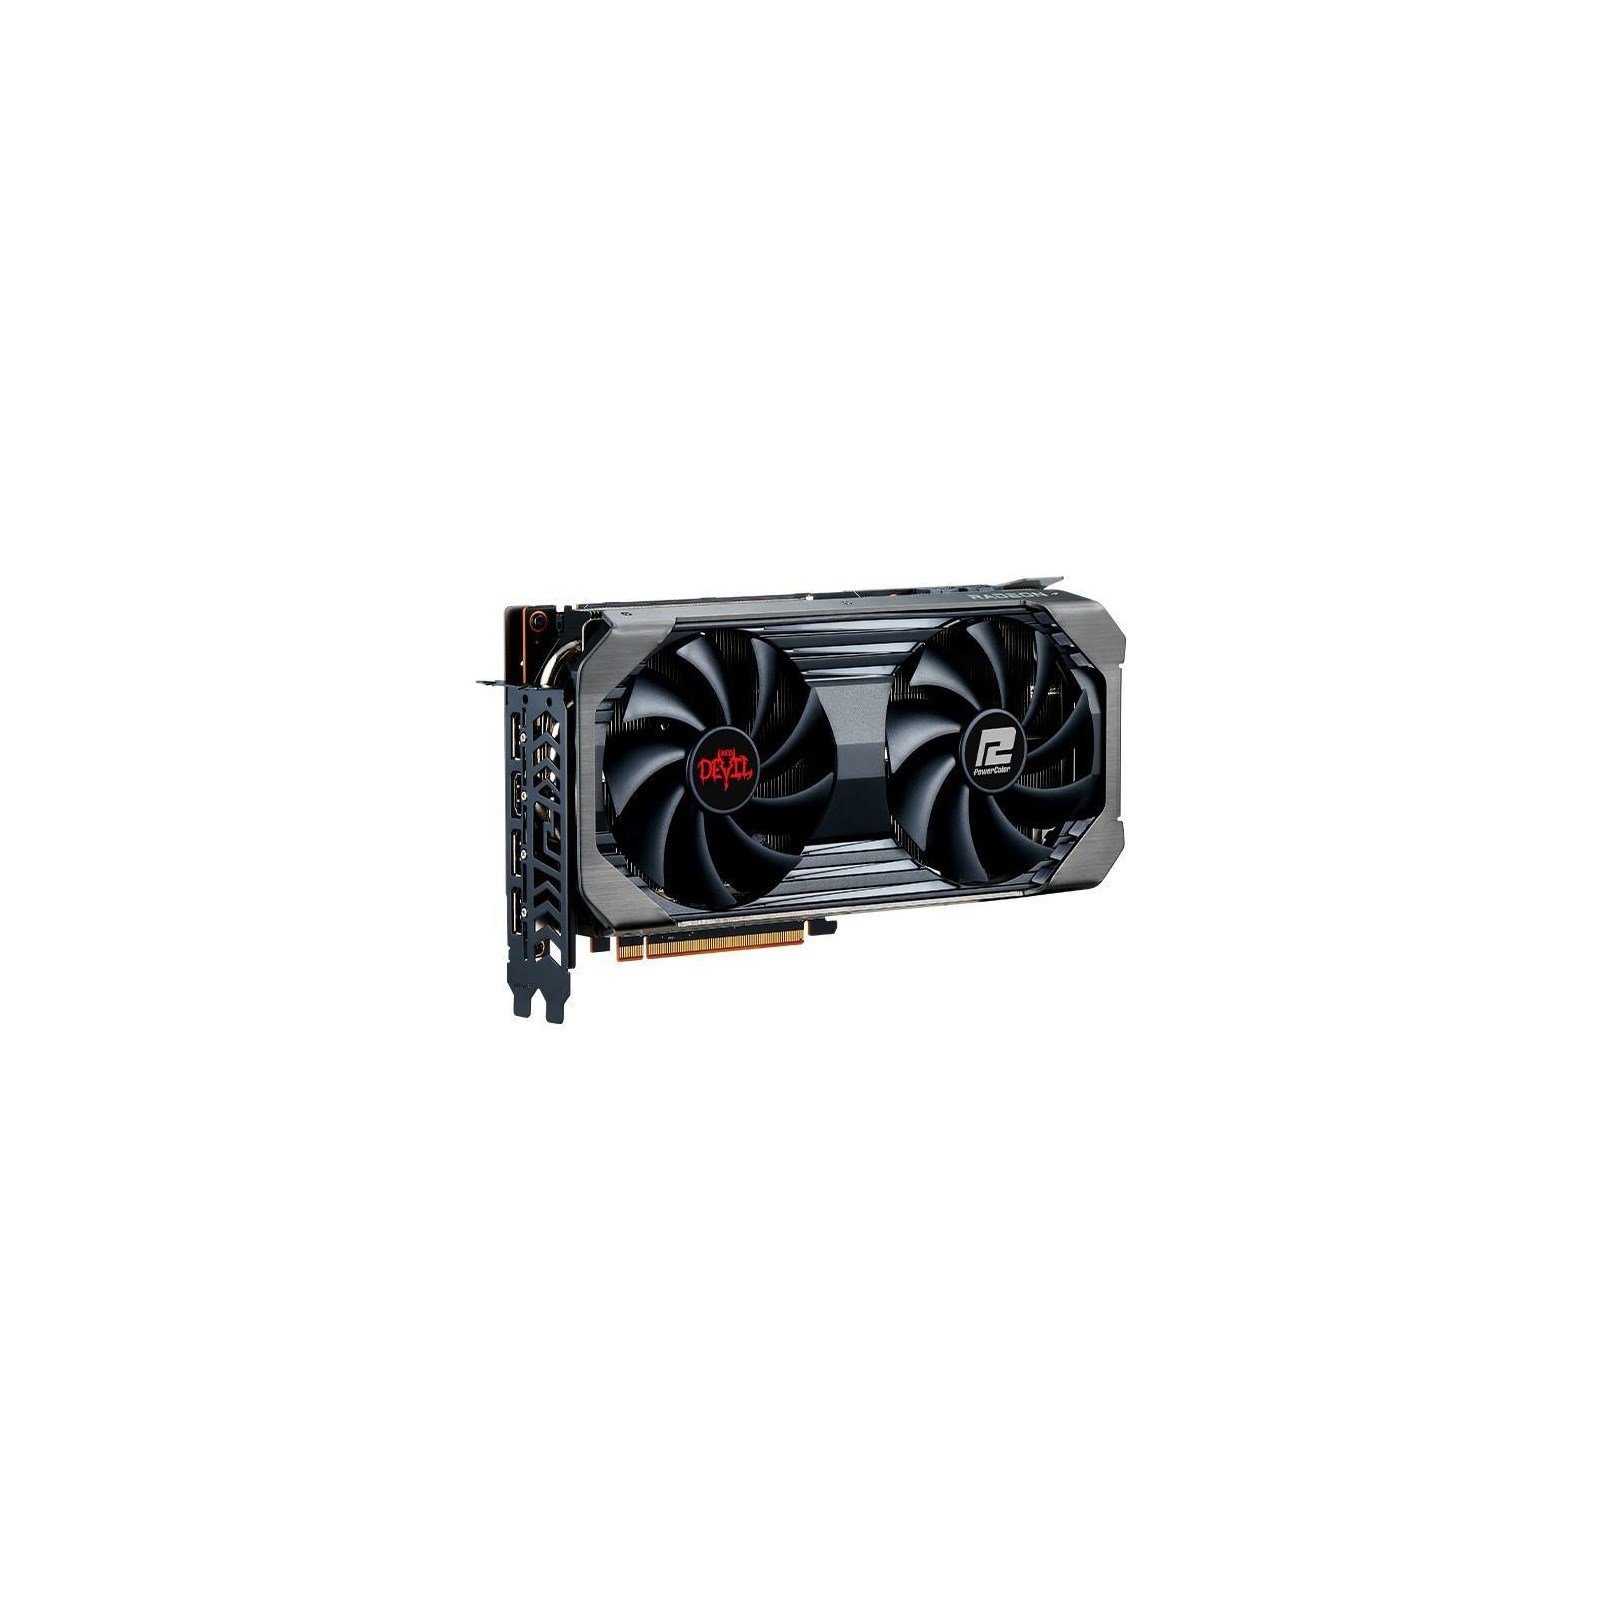 PowerColor Radeon RX 6650 XT Red Devil 8GB GPU - AXRX 6650XT 8GBD6